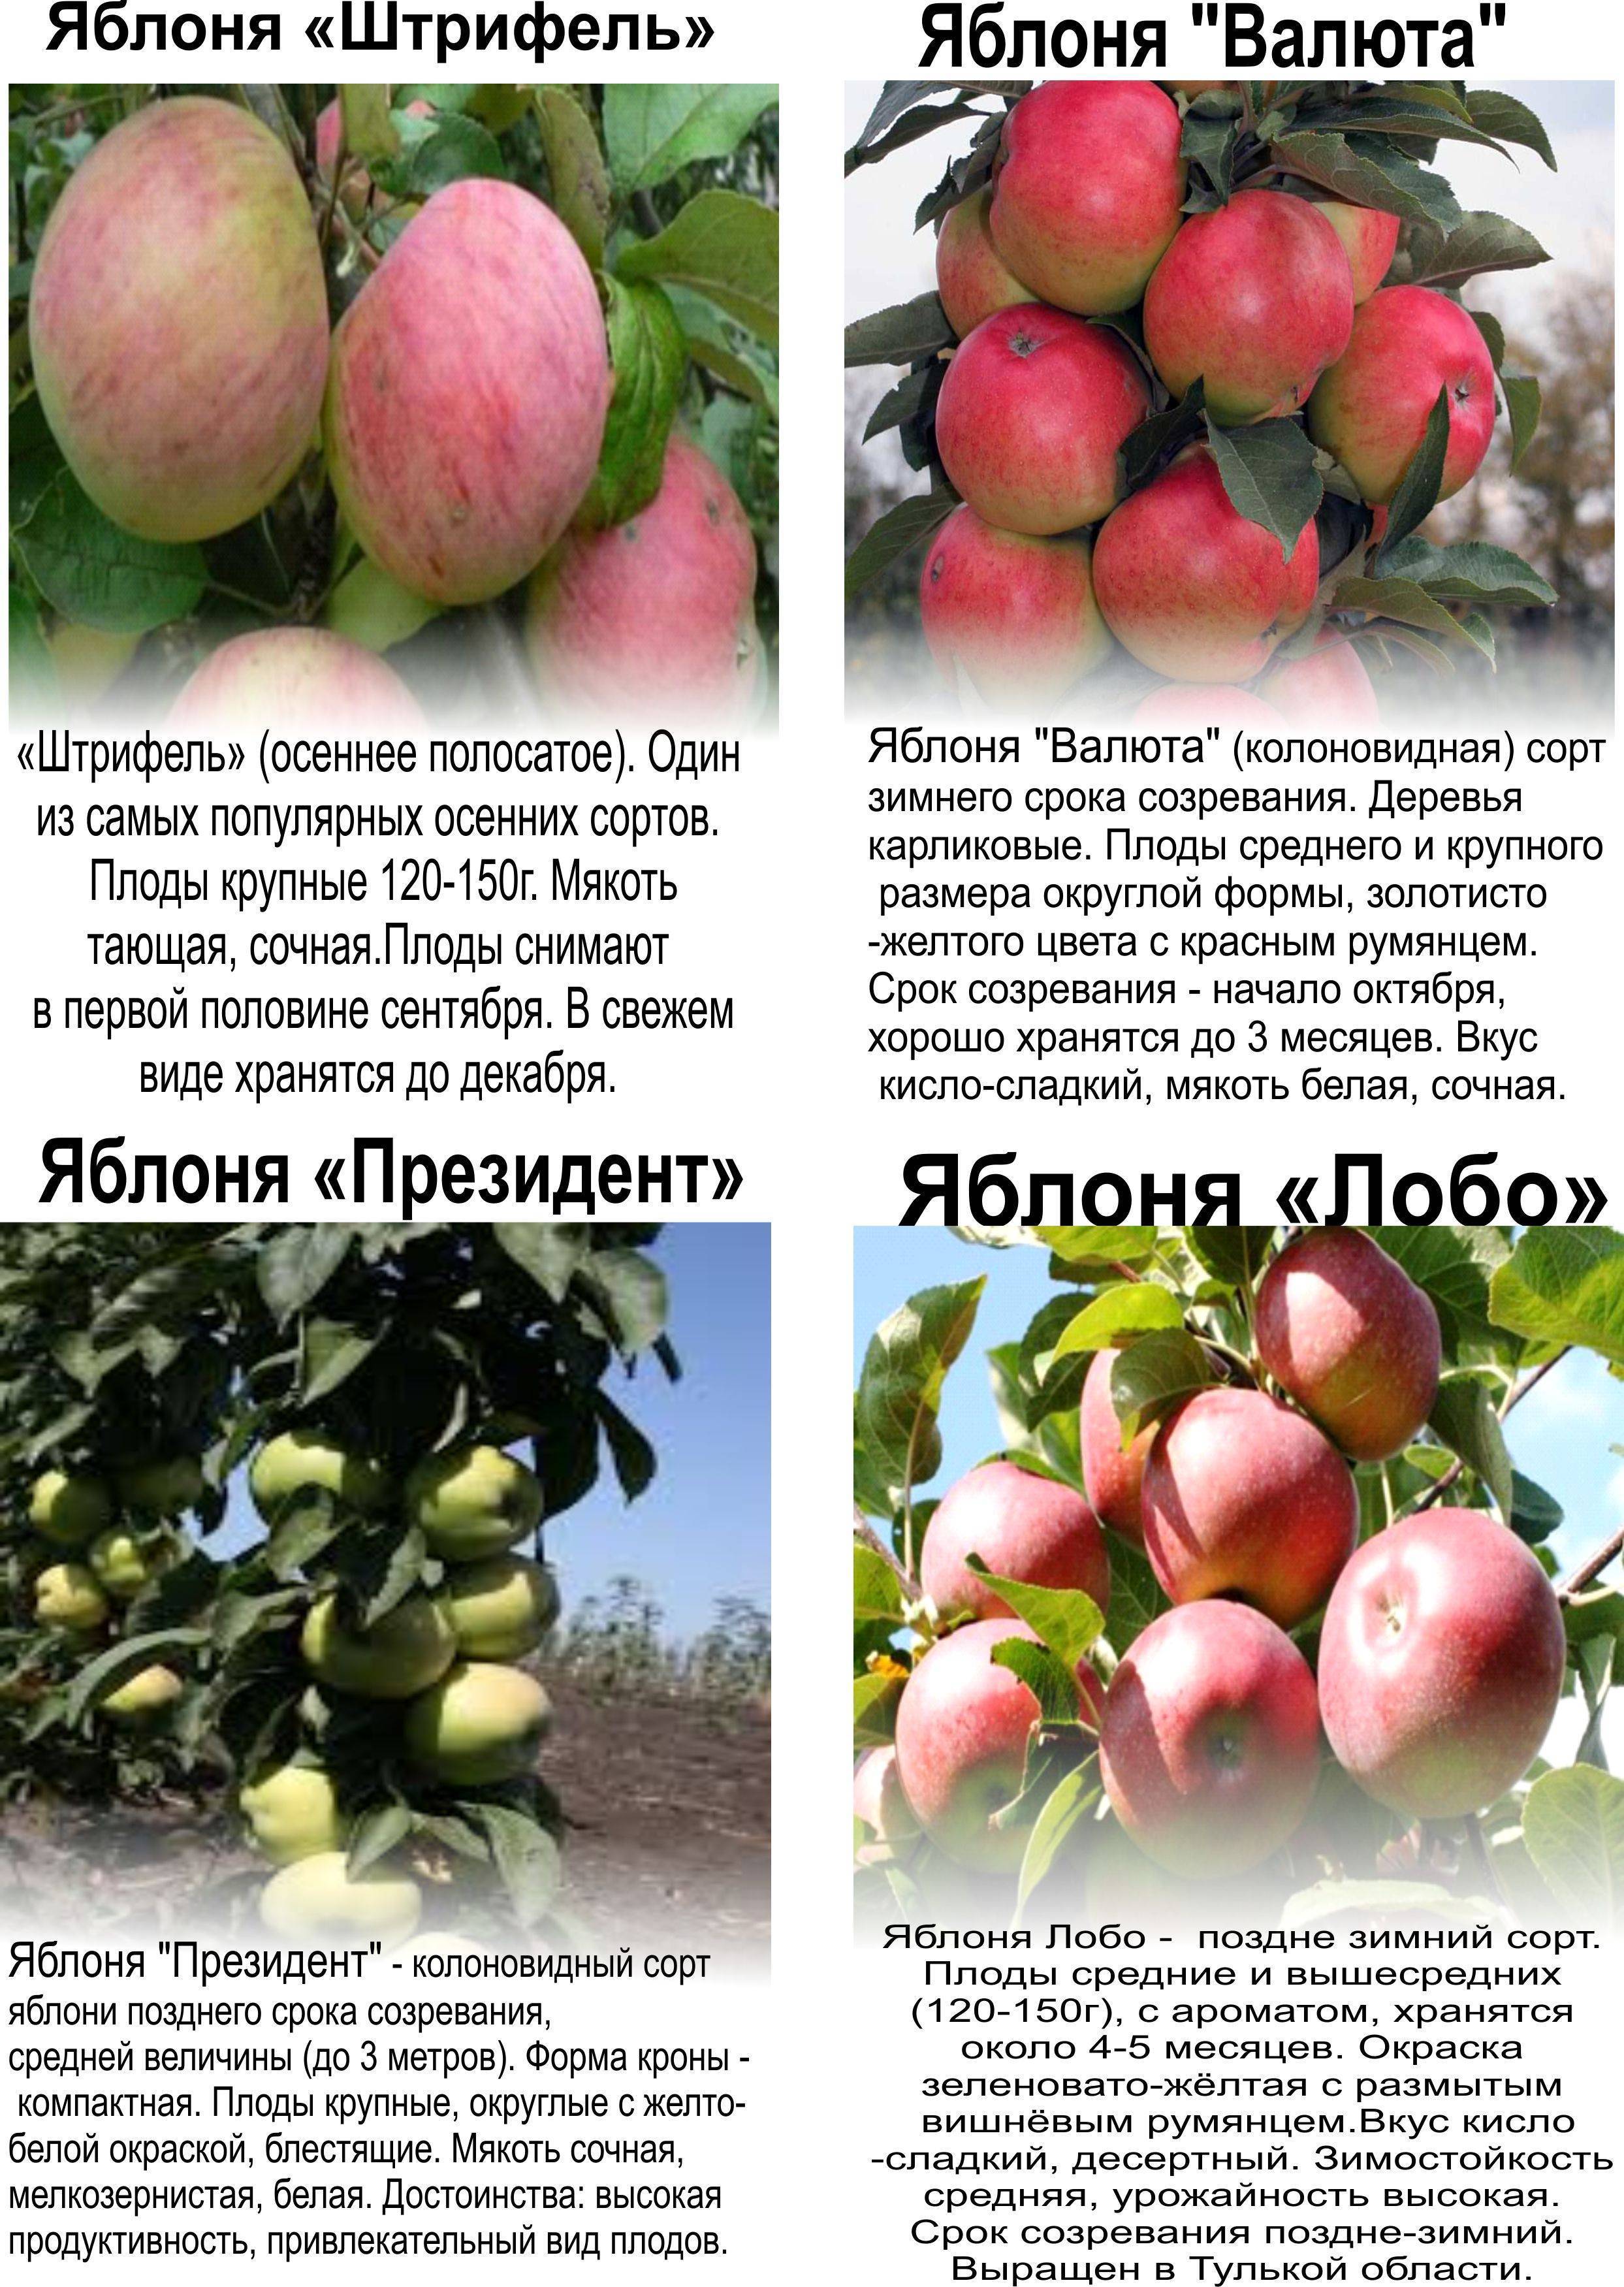 Колоновидная яблоня арбат: описание и характеристики сорта, правила выращивания, отзывы